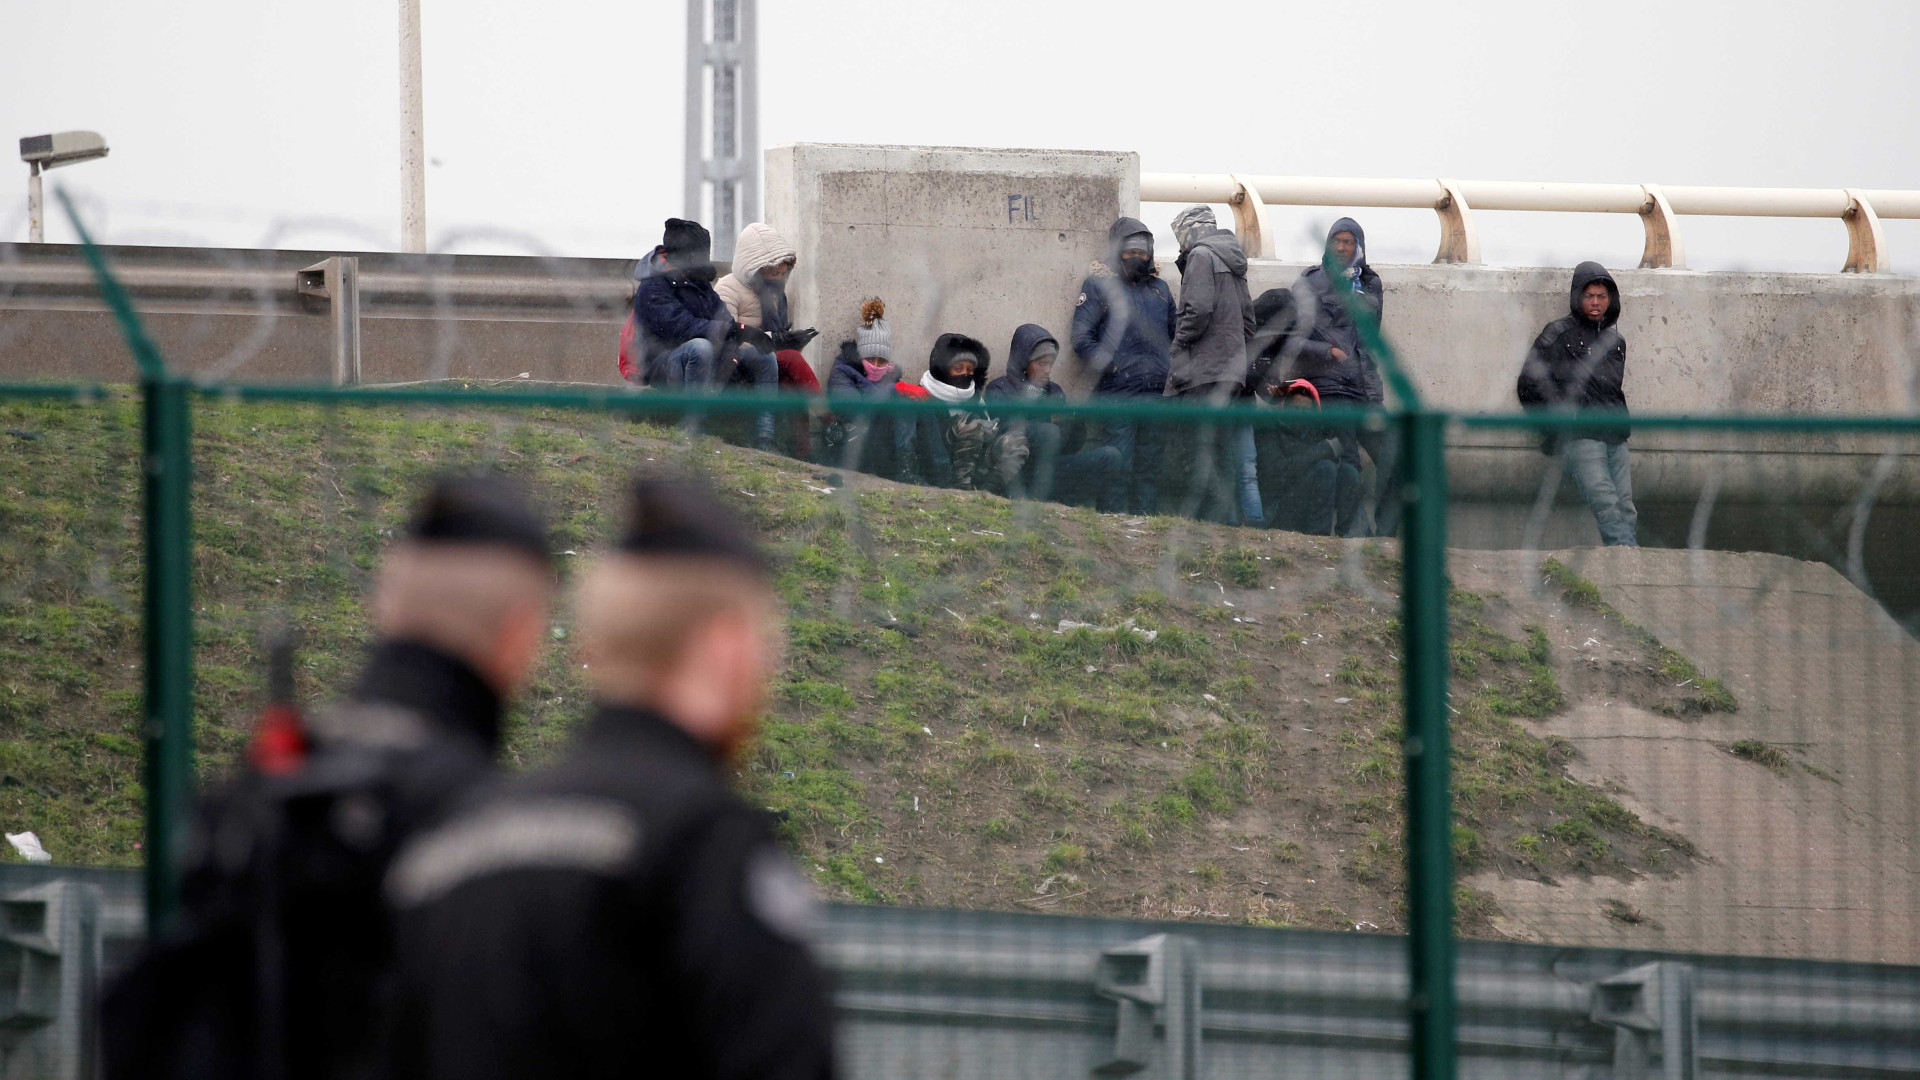 Briga entre imigrantes afegãos e africanos deixa 20 feridos na França